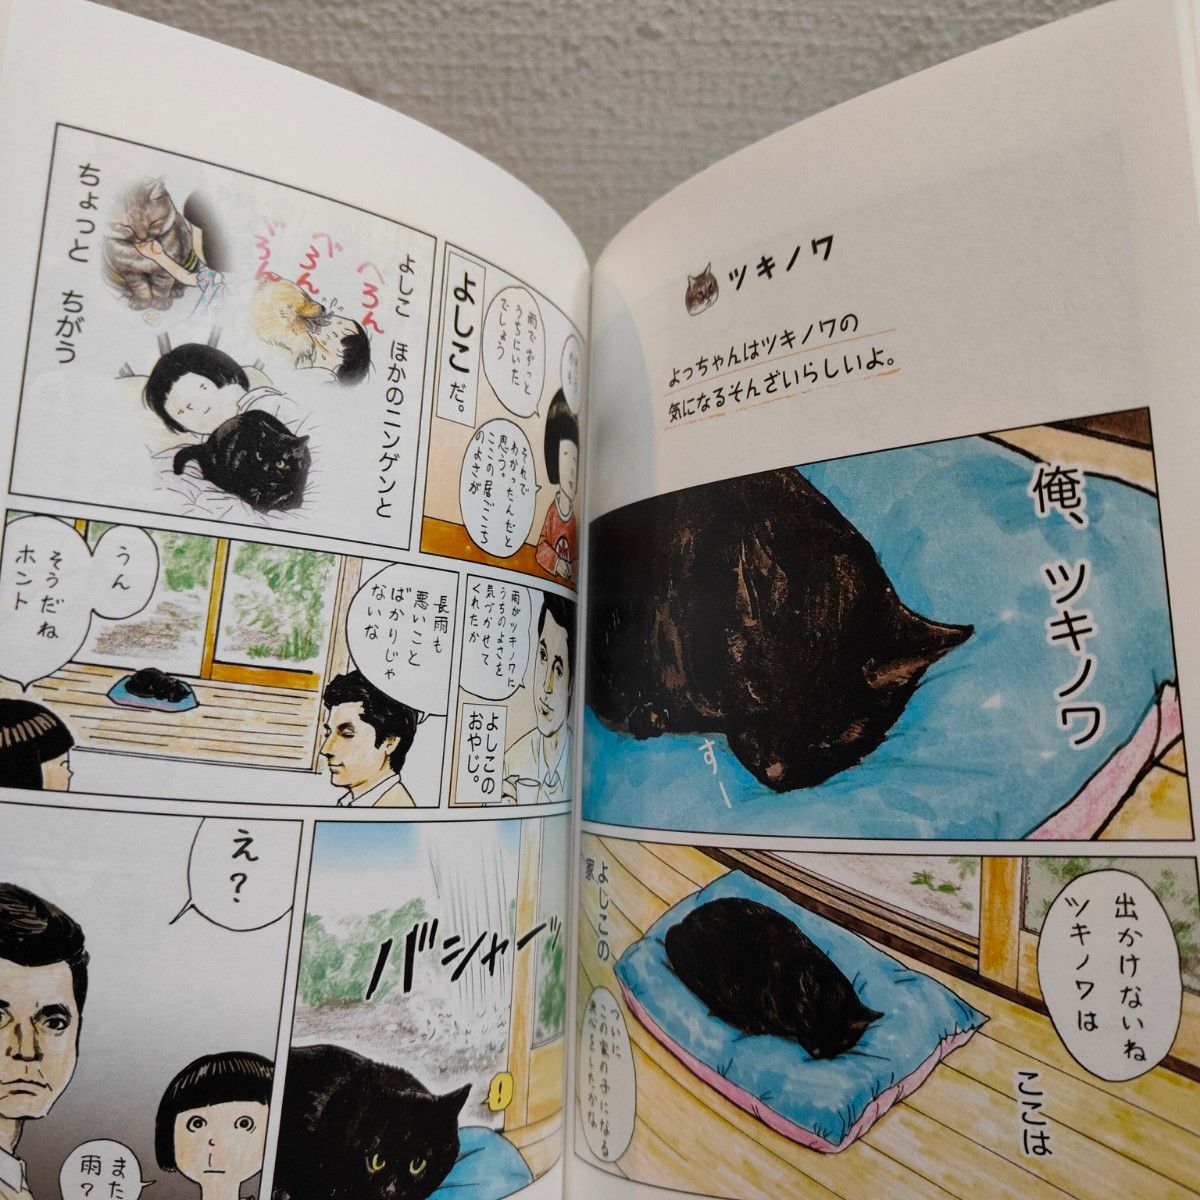 『 俺、つしま 3 』◆ おぷうのきょうだい / 猫 ネコ × 漫画 / カラー 癒し ほっこり